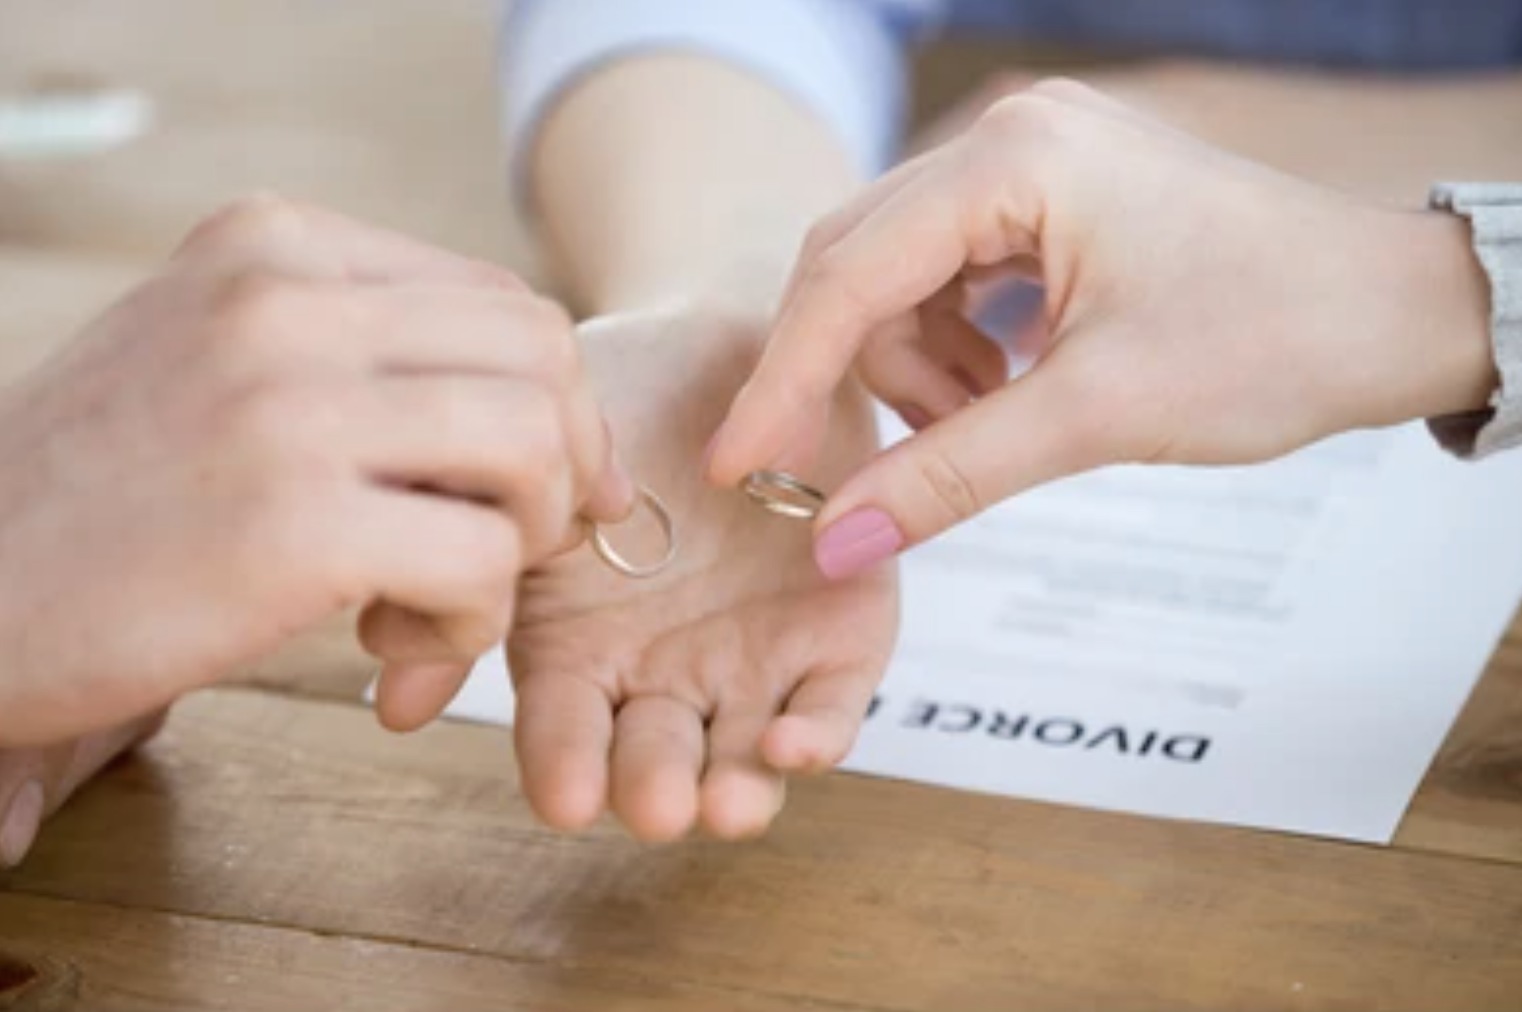 مزایای کار با وکیل یا متخصص طلاق در زمانی که خواهان استفاده از حق طلاق هستید